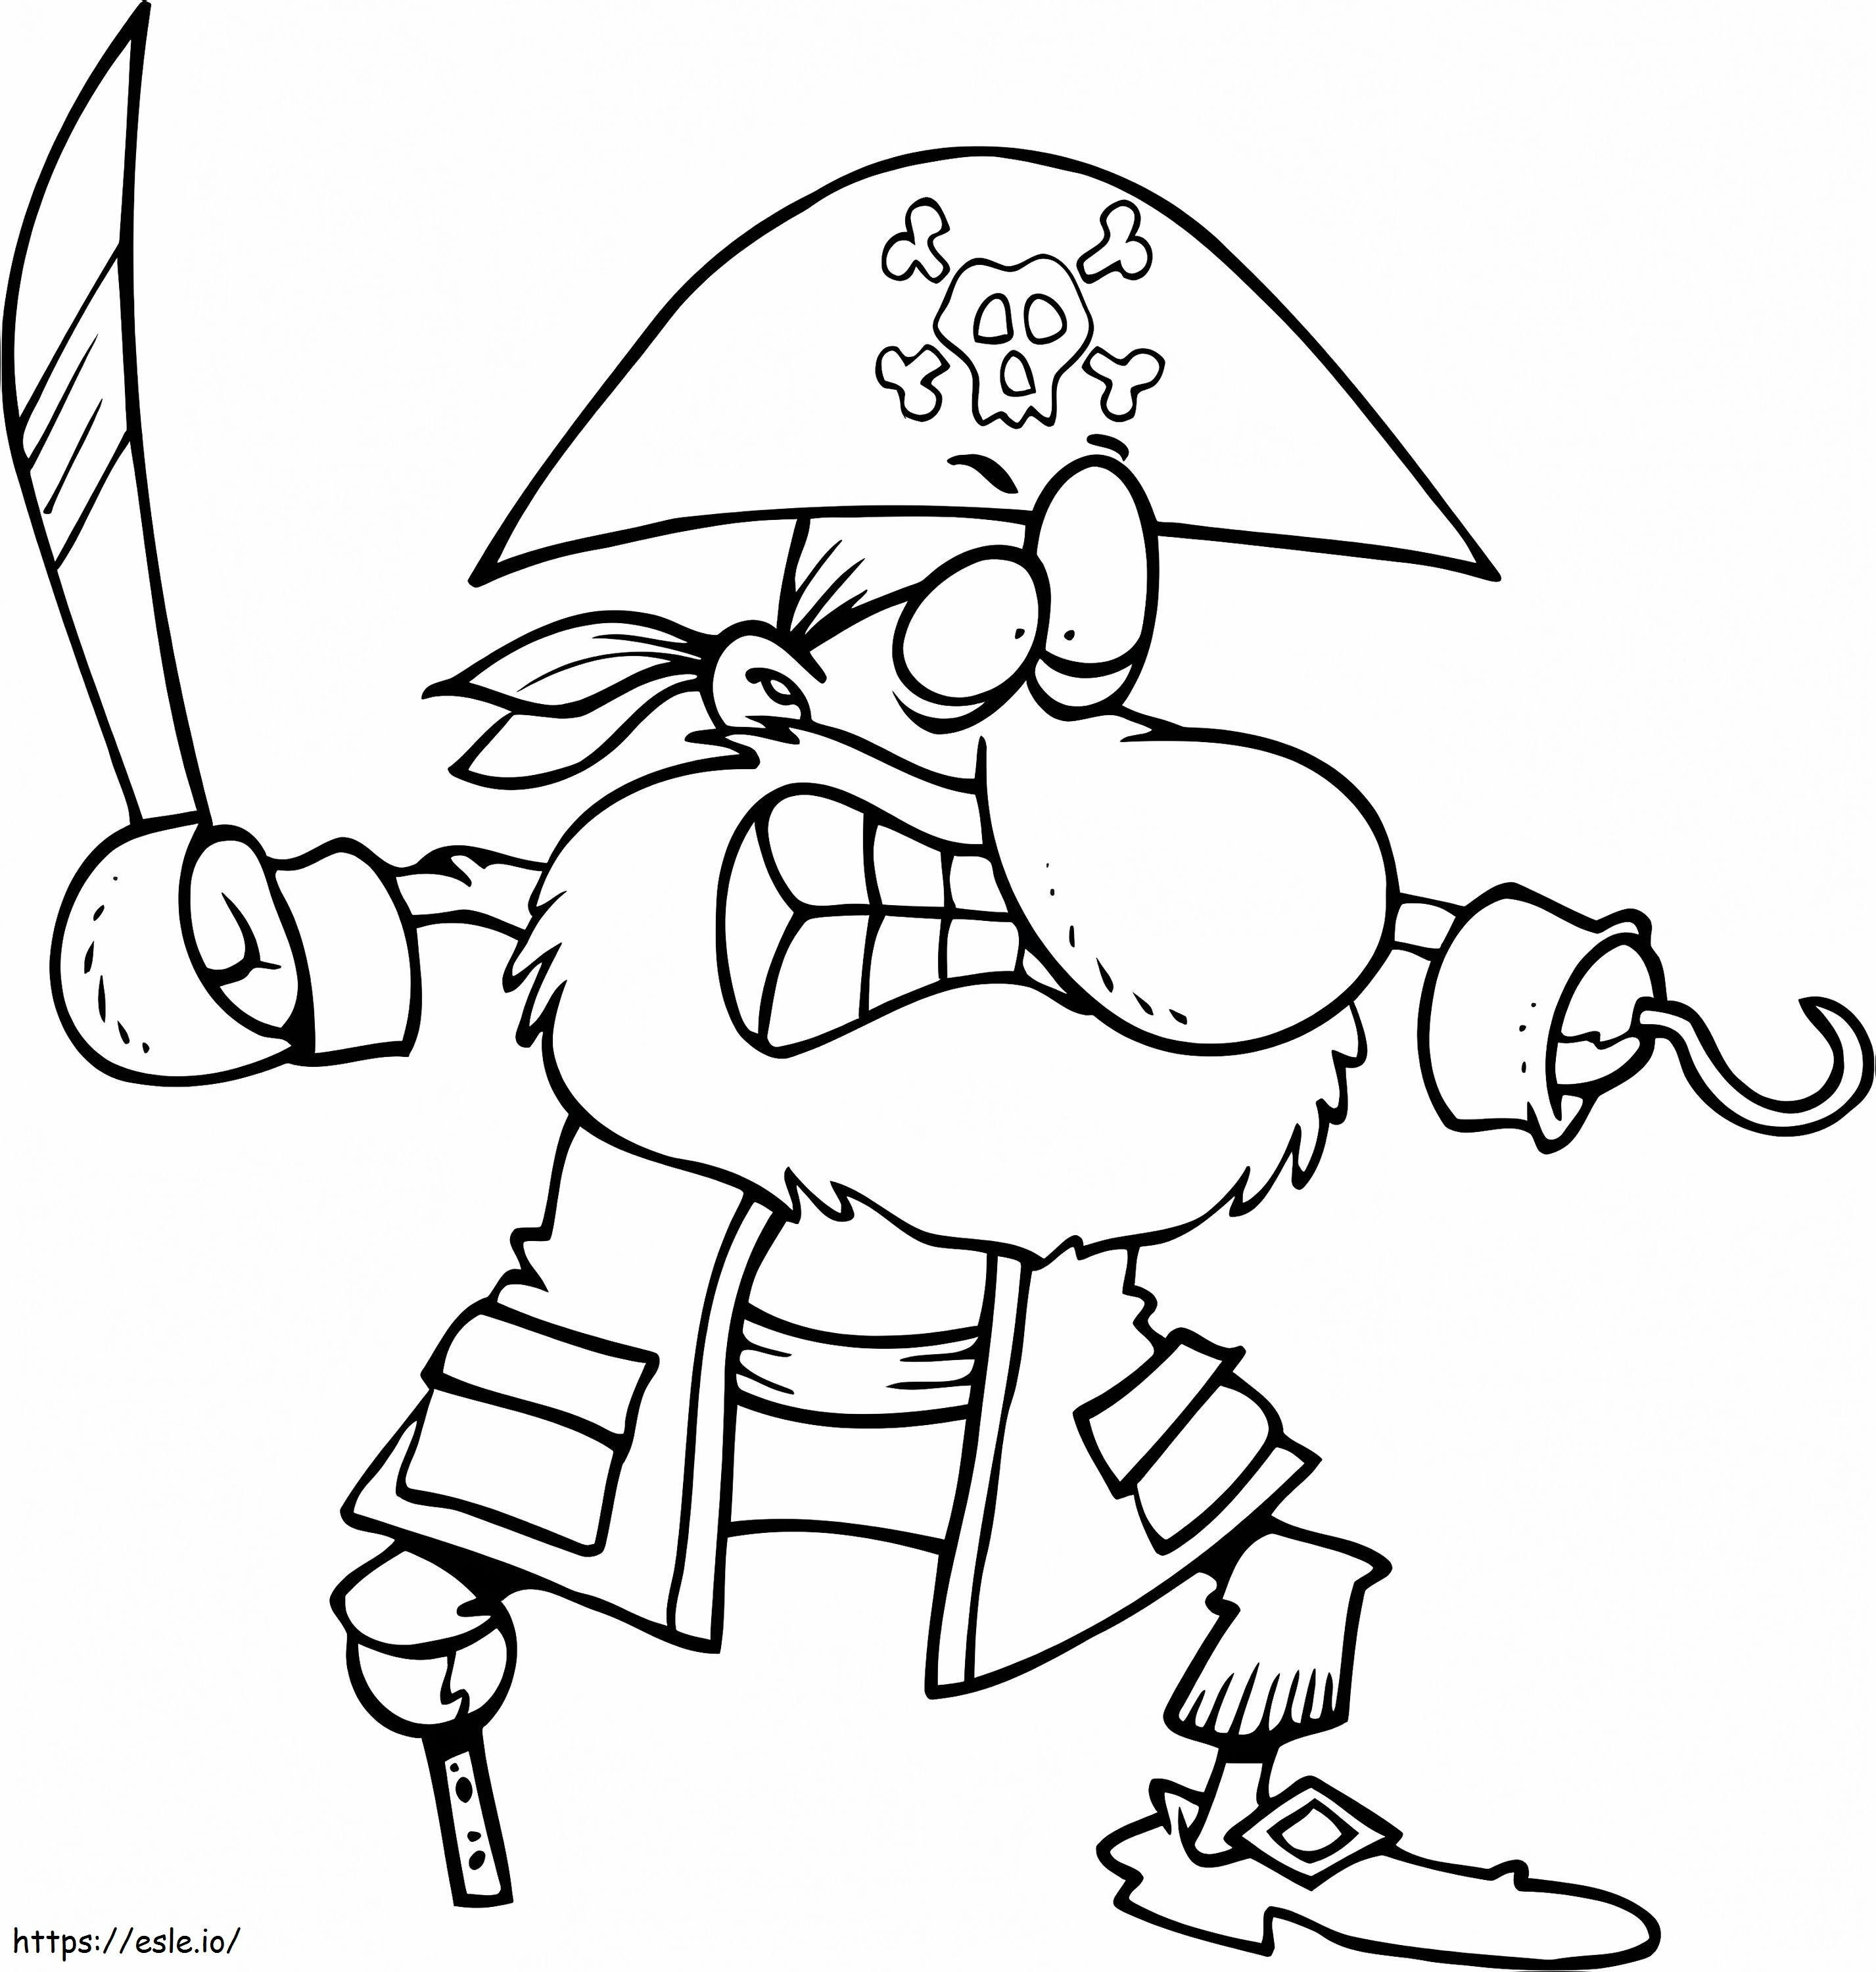 Stile cartone animato pirata da colorare